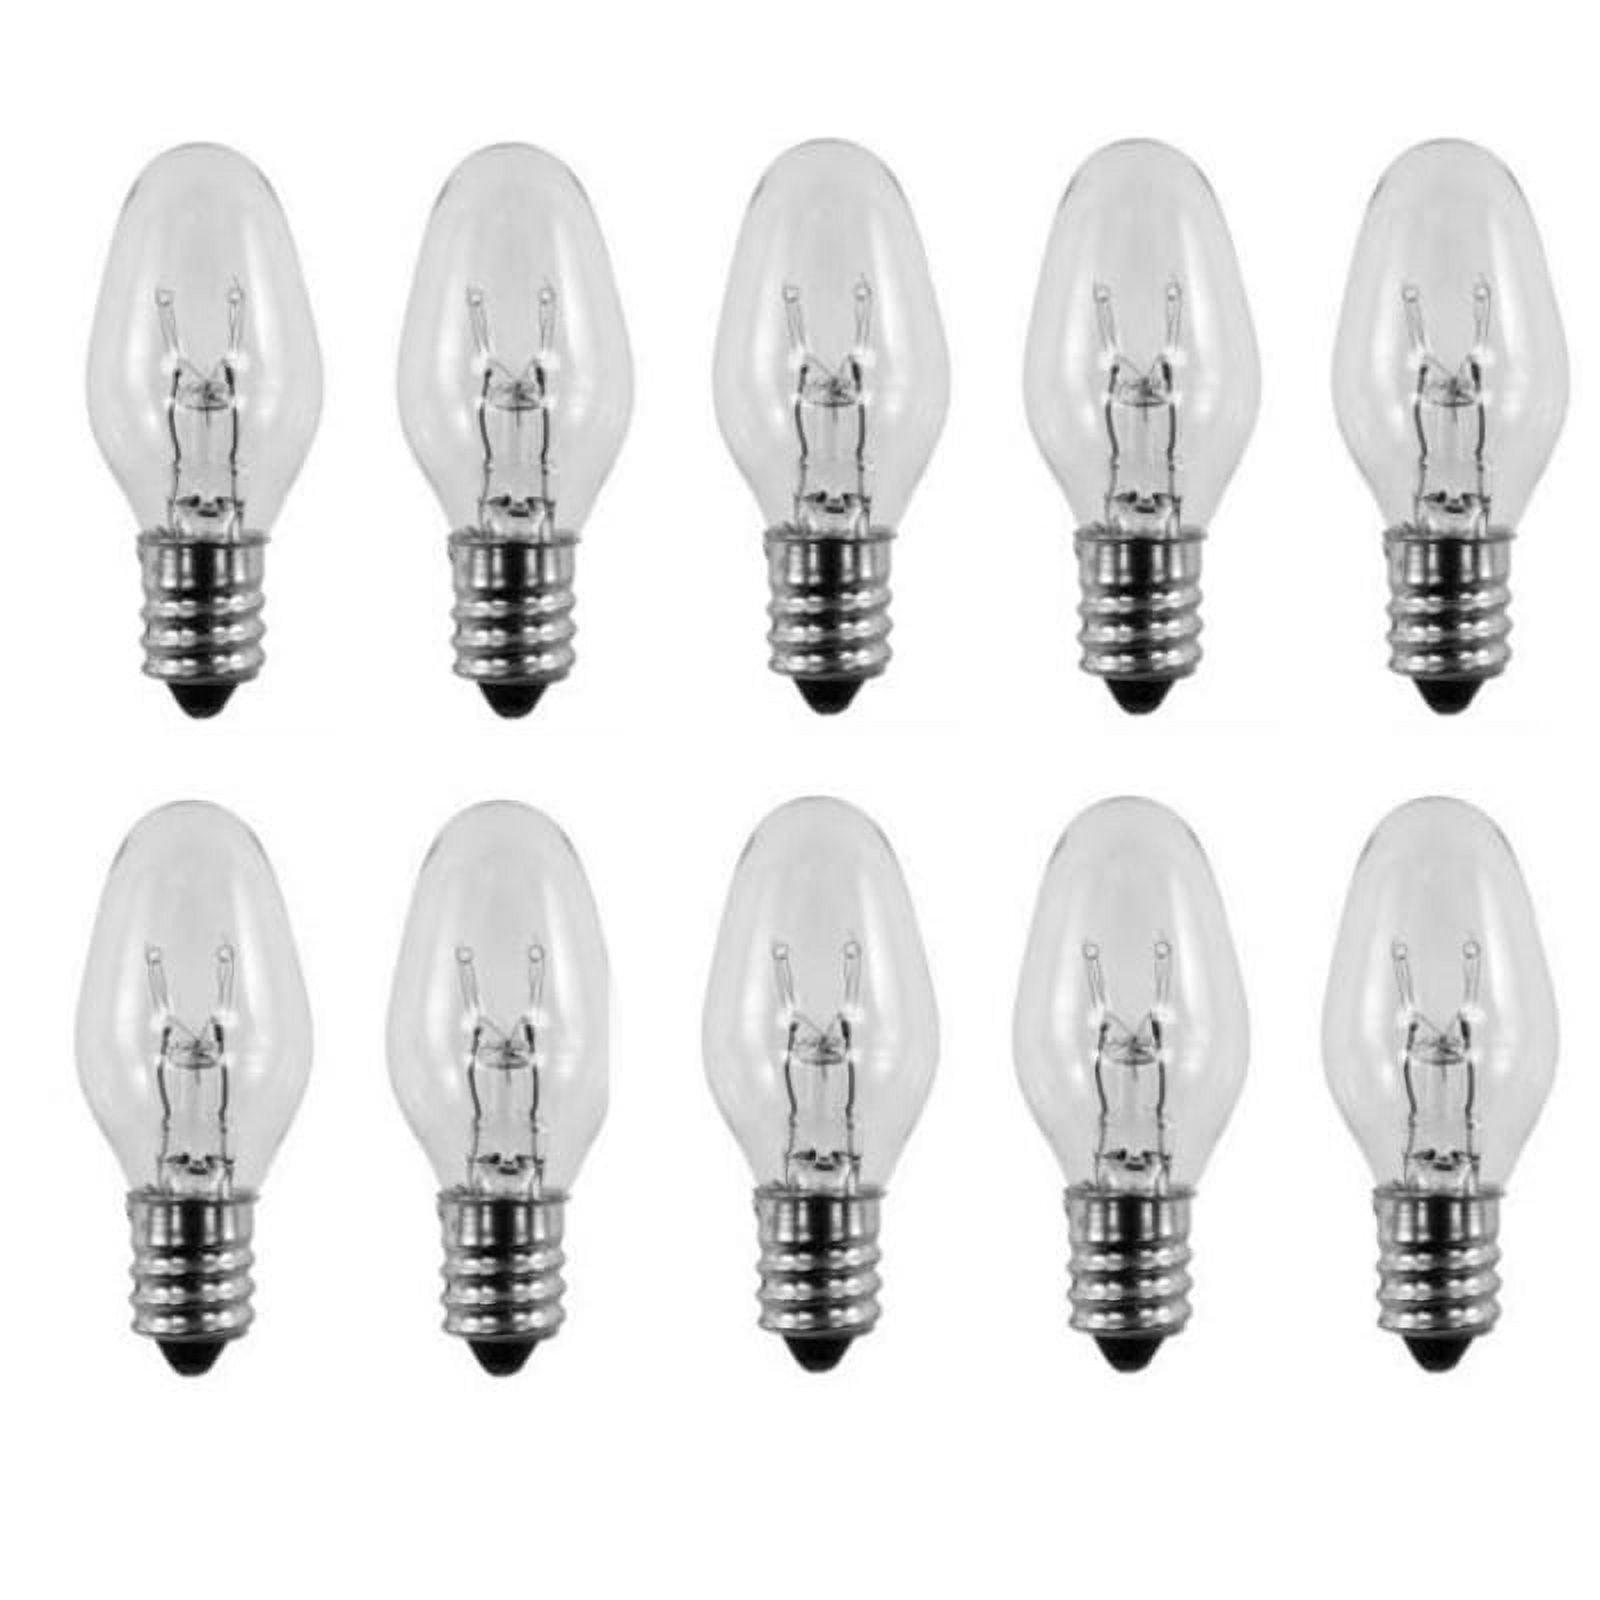 Lumenivo Lot de 10 ampoules 120 V 15 W pour veilleuse Scentsy Warmer – 15 W  – Ampoules de rechange pour bougies parfumées pour lampes de sel de